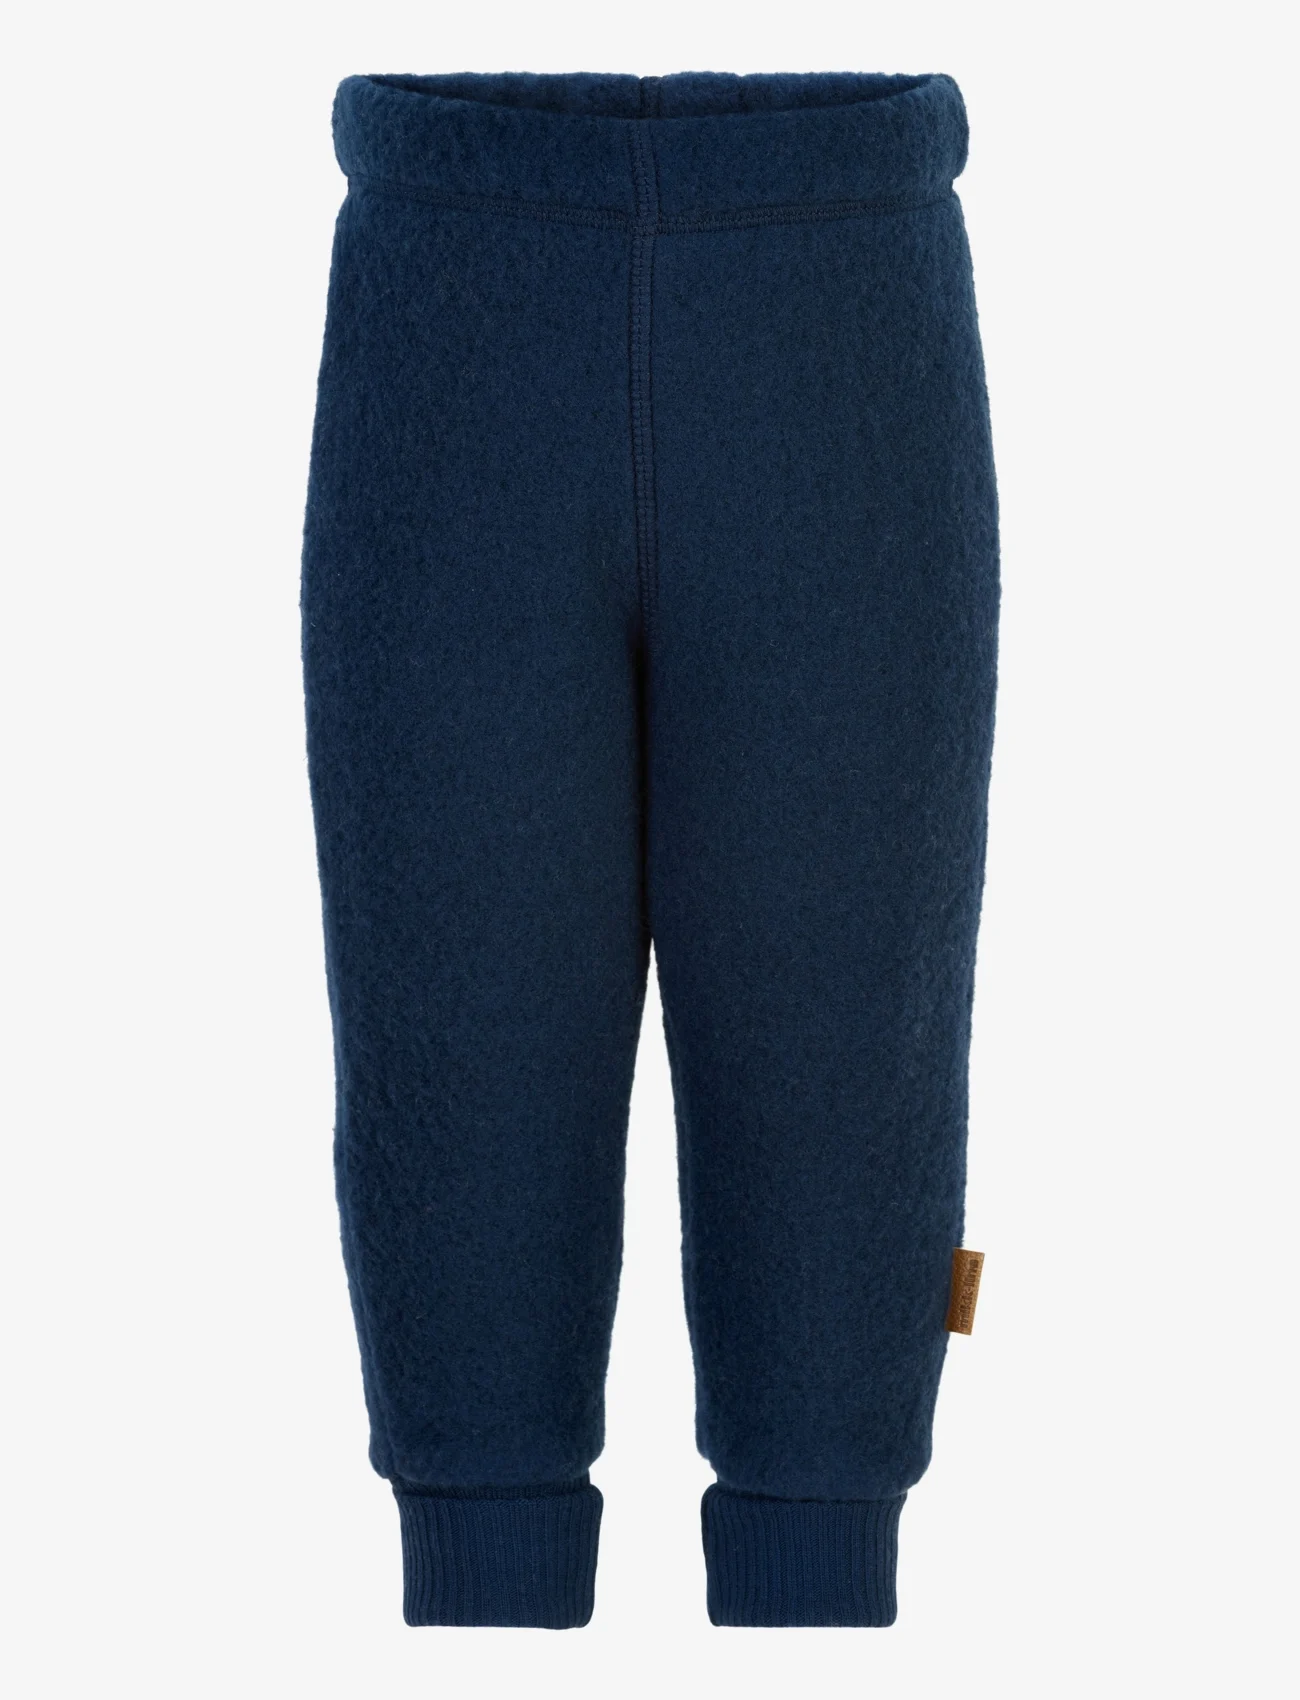 mikk-line - WOOL Pants - fleece trousers - blue nights - 0